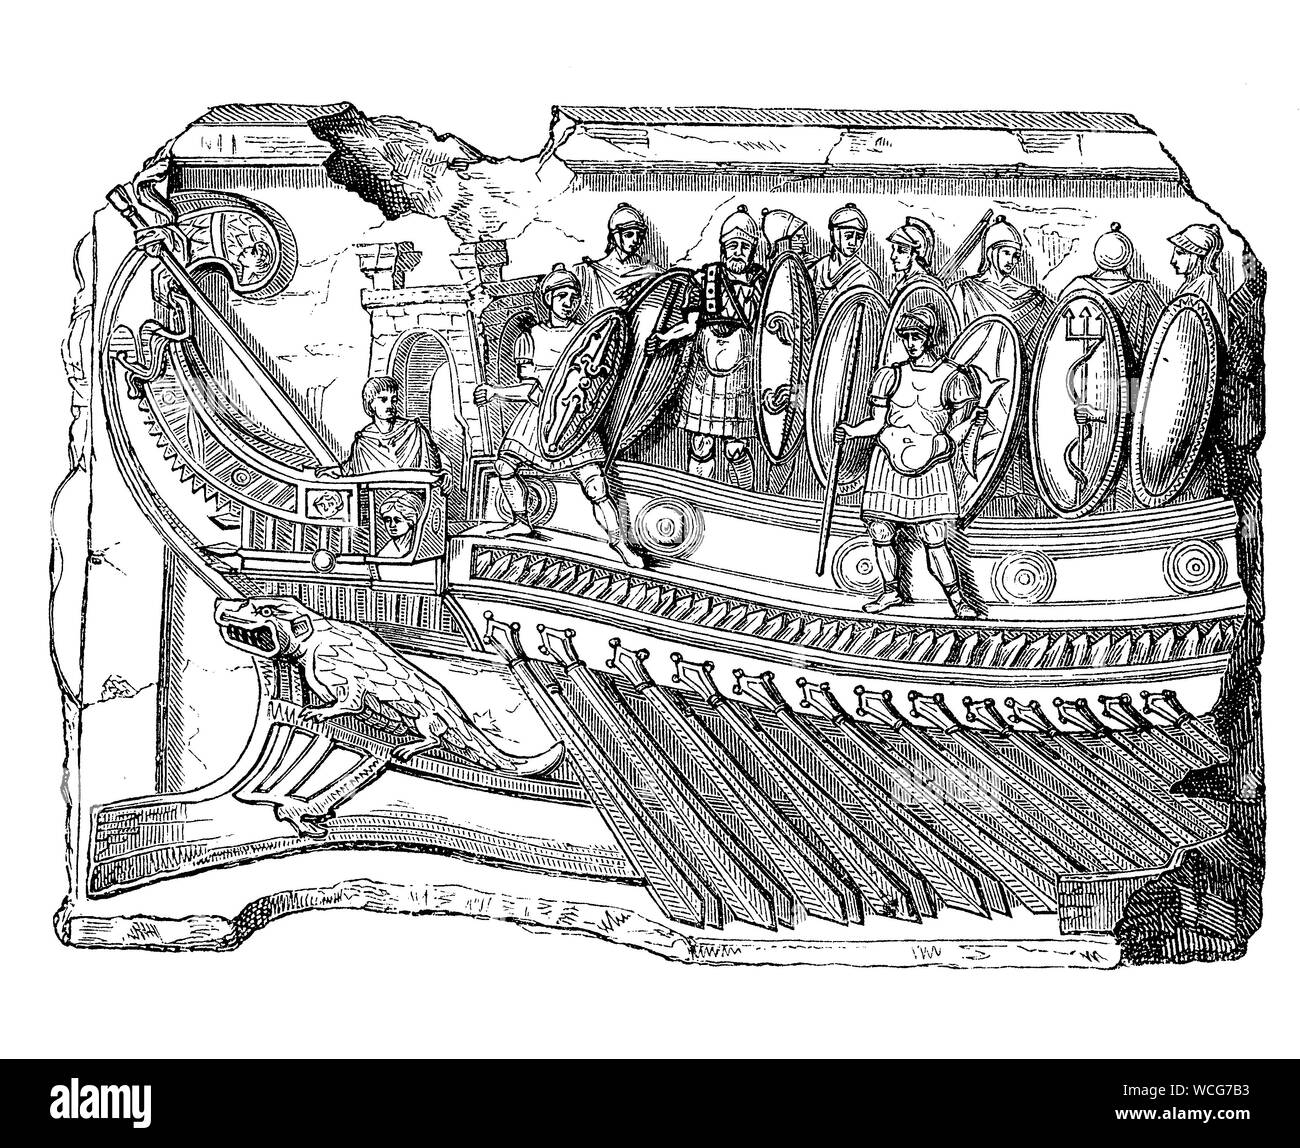 L'antiquité Rome : navire amiral fragment d'Antonius à Actium bataille, le navire était un poids léger liburnian cuisine avec une ligne d'avirons Banque D'Images